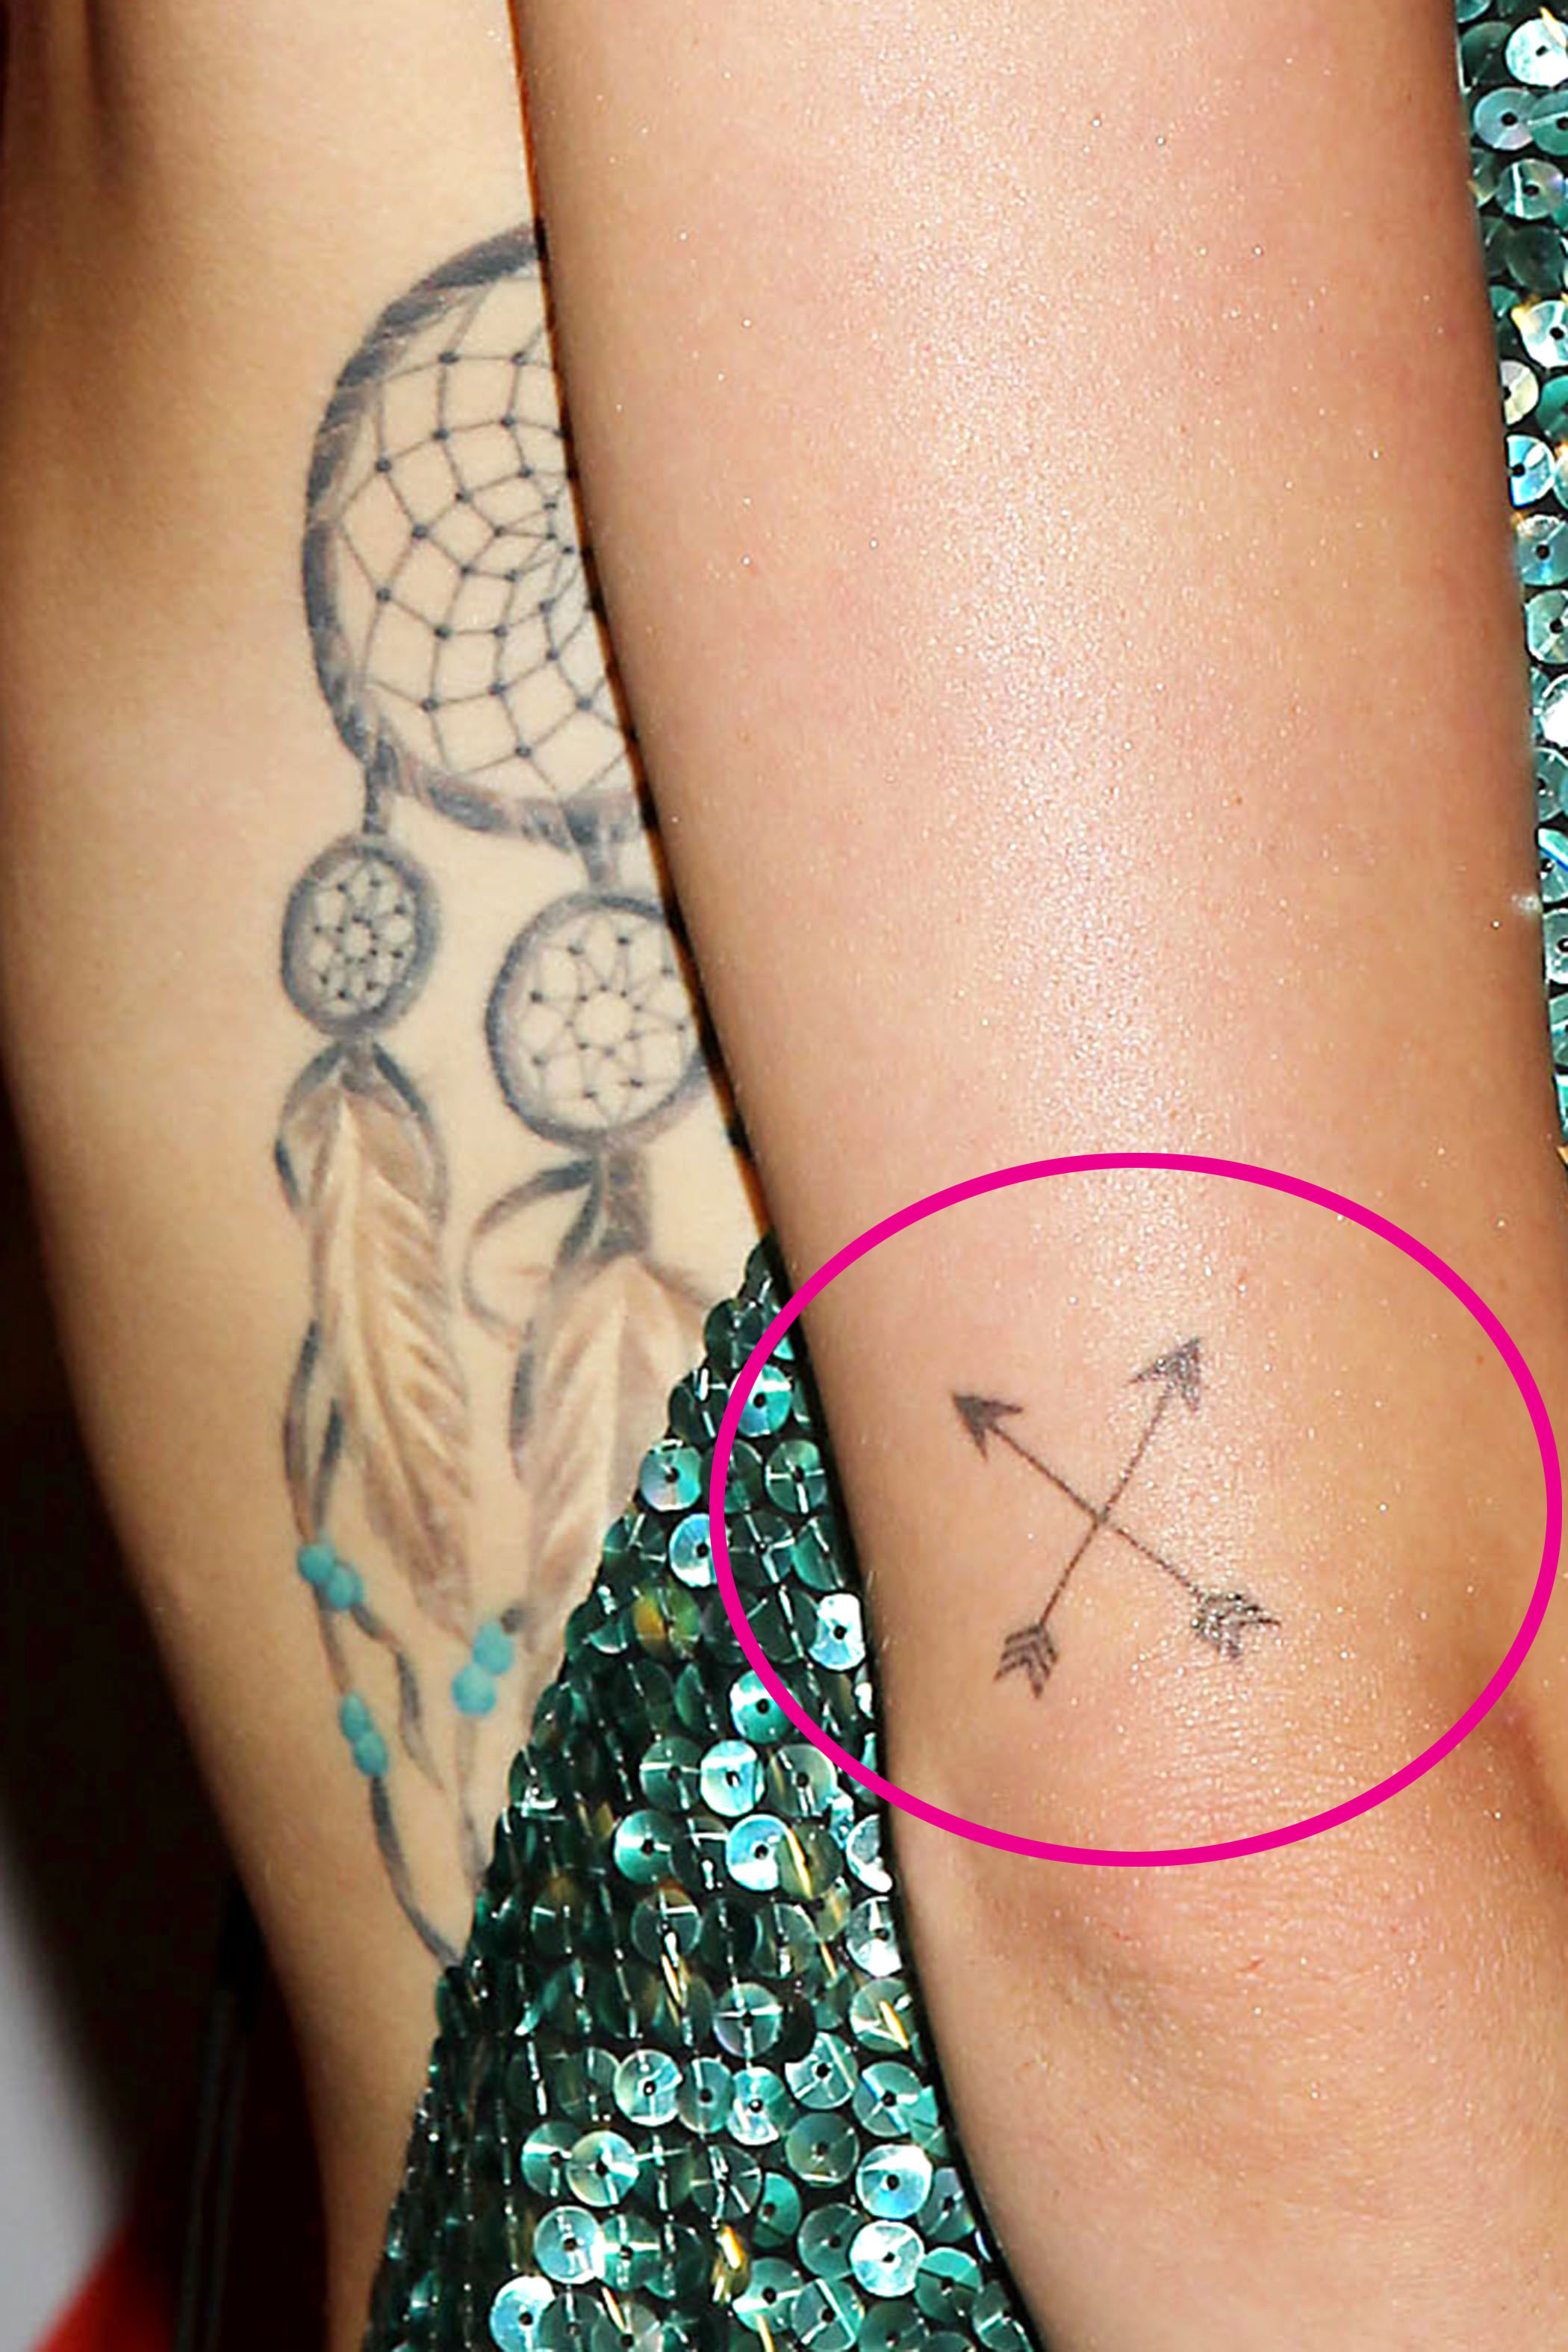 Miley Cyrus Tattoos: Complete Breakdown Of Ink Designs' Meanings